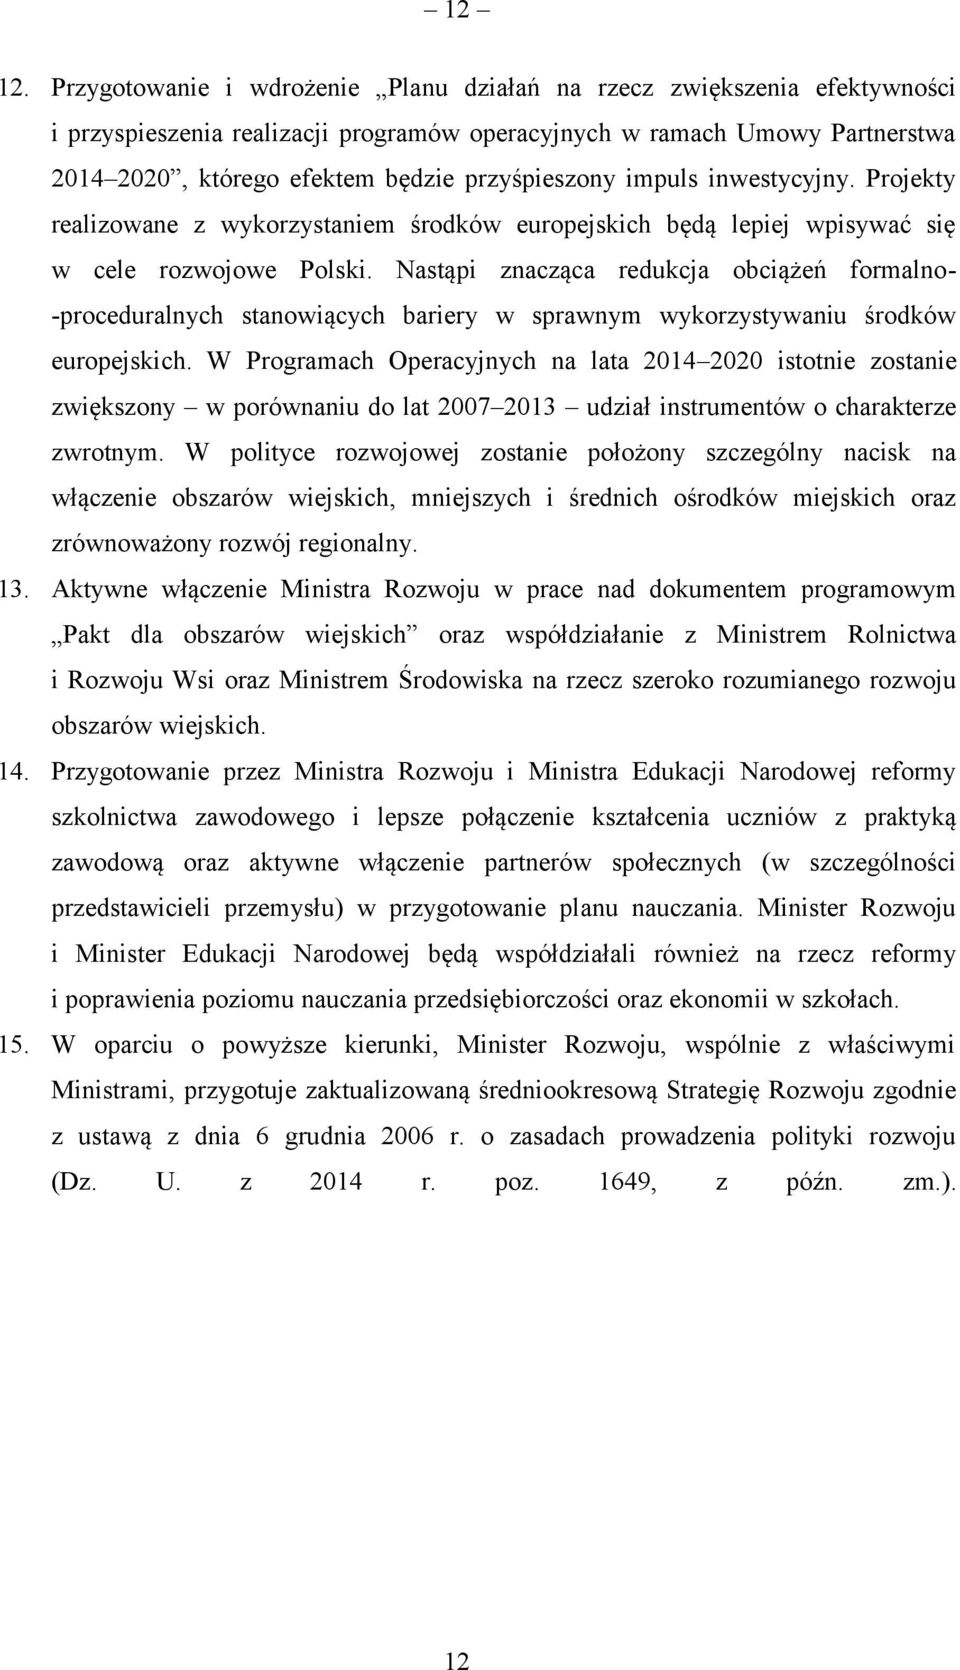 impuls inwestycyjny. Projekty realizowane z wykorzystaniem środków europejskich będą lepiej wpisywać się w cele rozwojowe Polski.